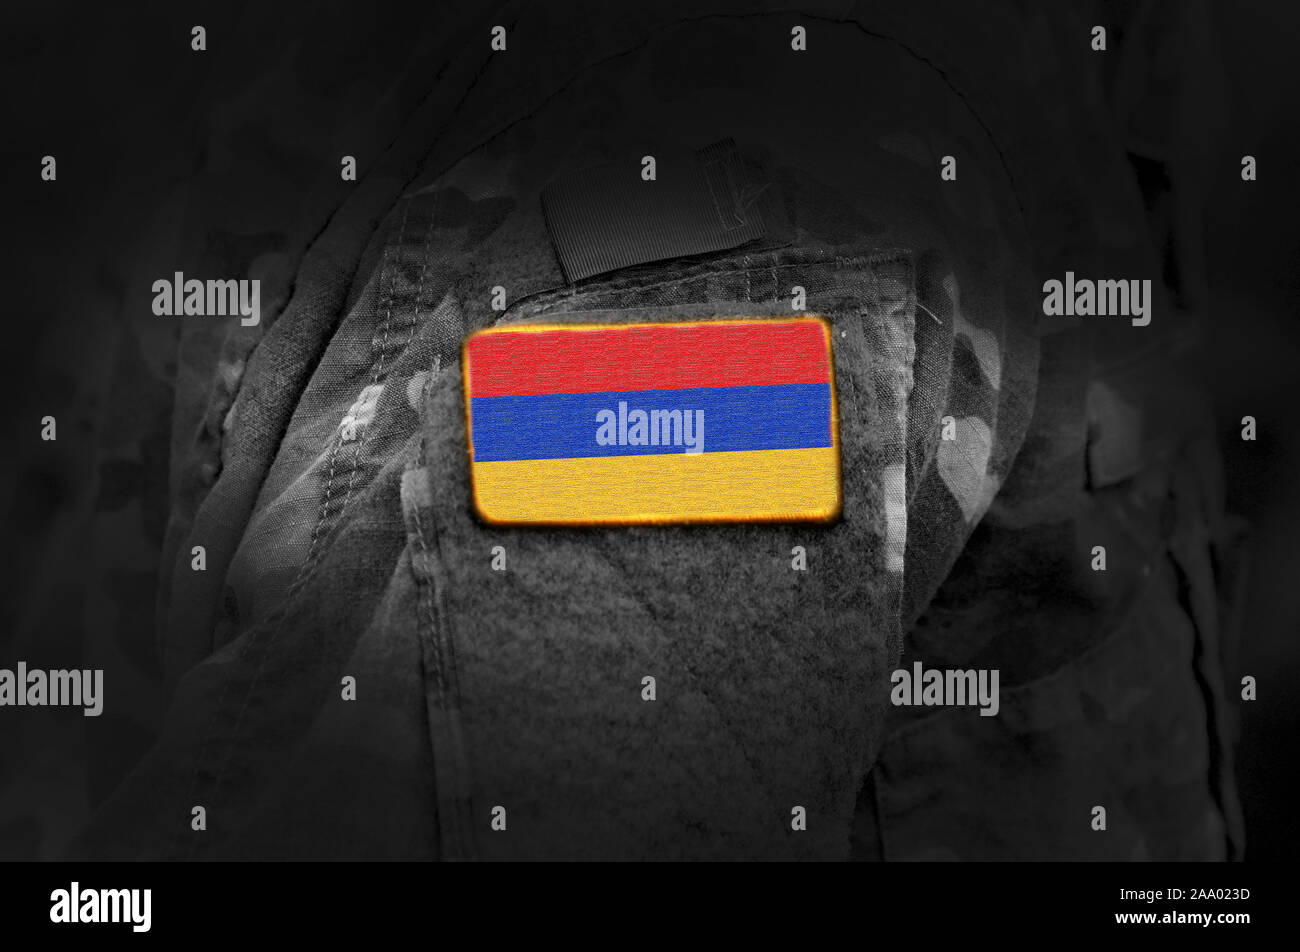 Flagge von Armenien über militärische Uniform. Armee, Bundeswehr, Soldaten. Collage. Stockfoto